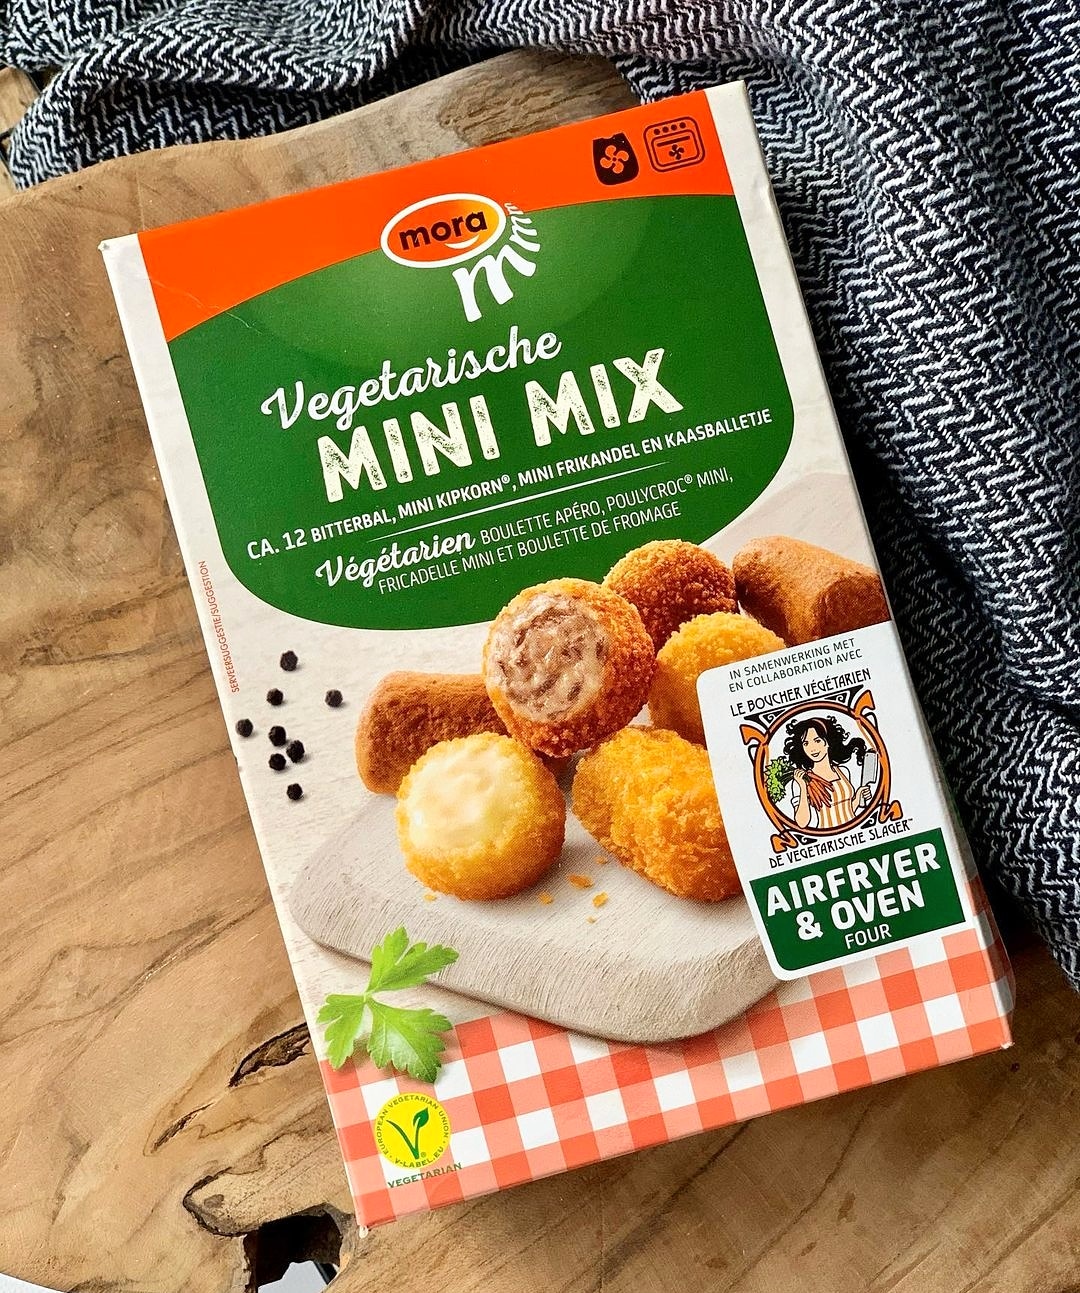 De Vegetarische Slager on Twitter: "NIEUW ✨ De Vegetarische Mini Mix in  samenwerking met Mora! Een variatie van Neerlands snackiconen, een hapje  kleiner gemaakt en nu tezamen in één verpacking. Spot 'mmm